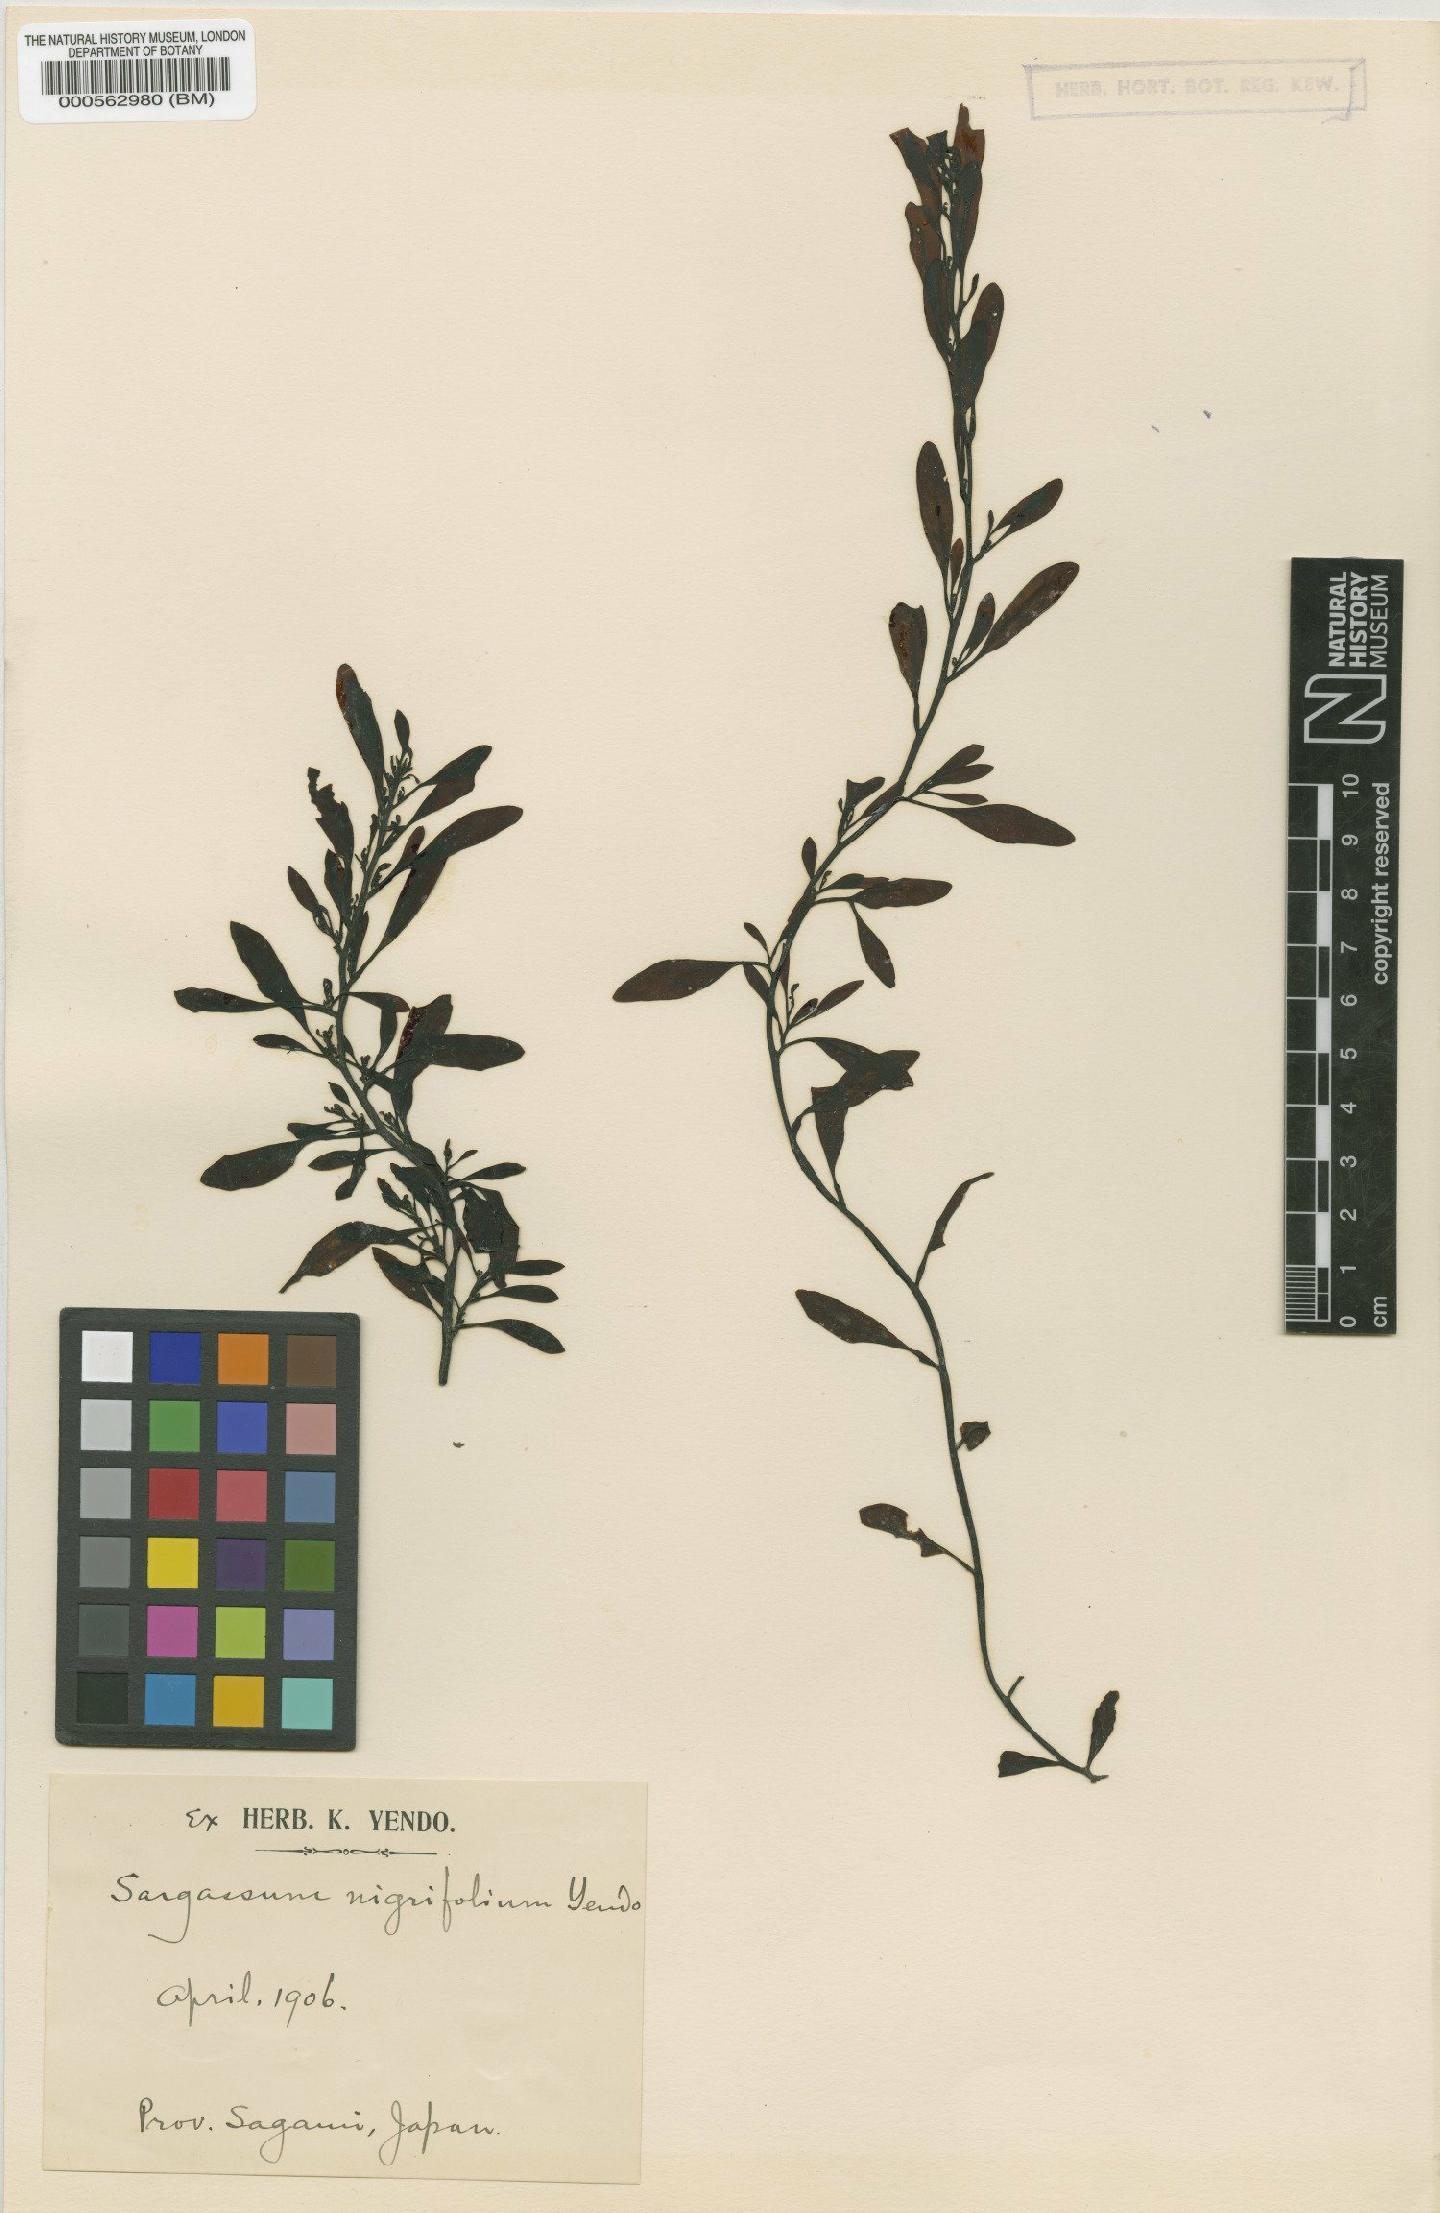 To NHMUK collection (Sargassum nigrifolium Yendo; TYPE; NHMUK:ecatalogue:4722544)